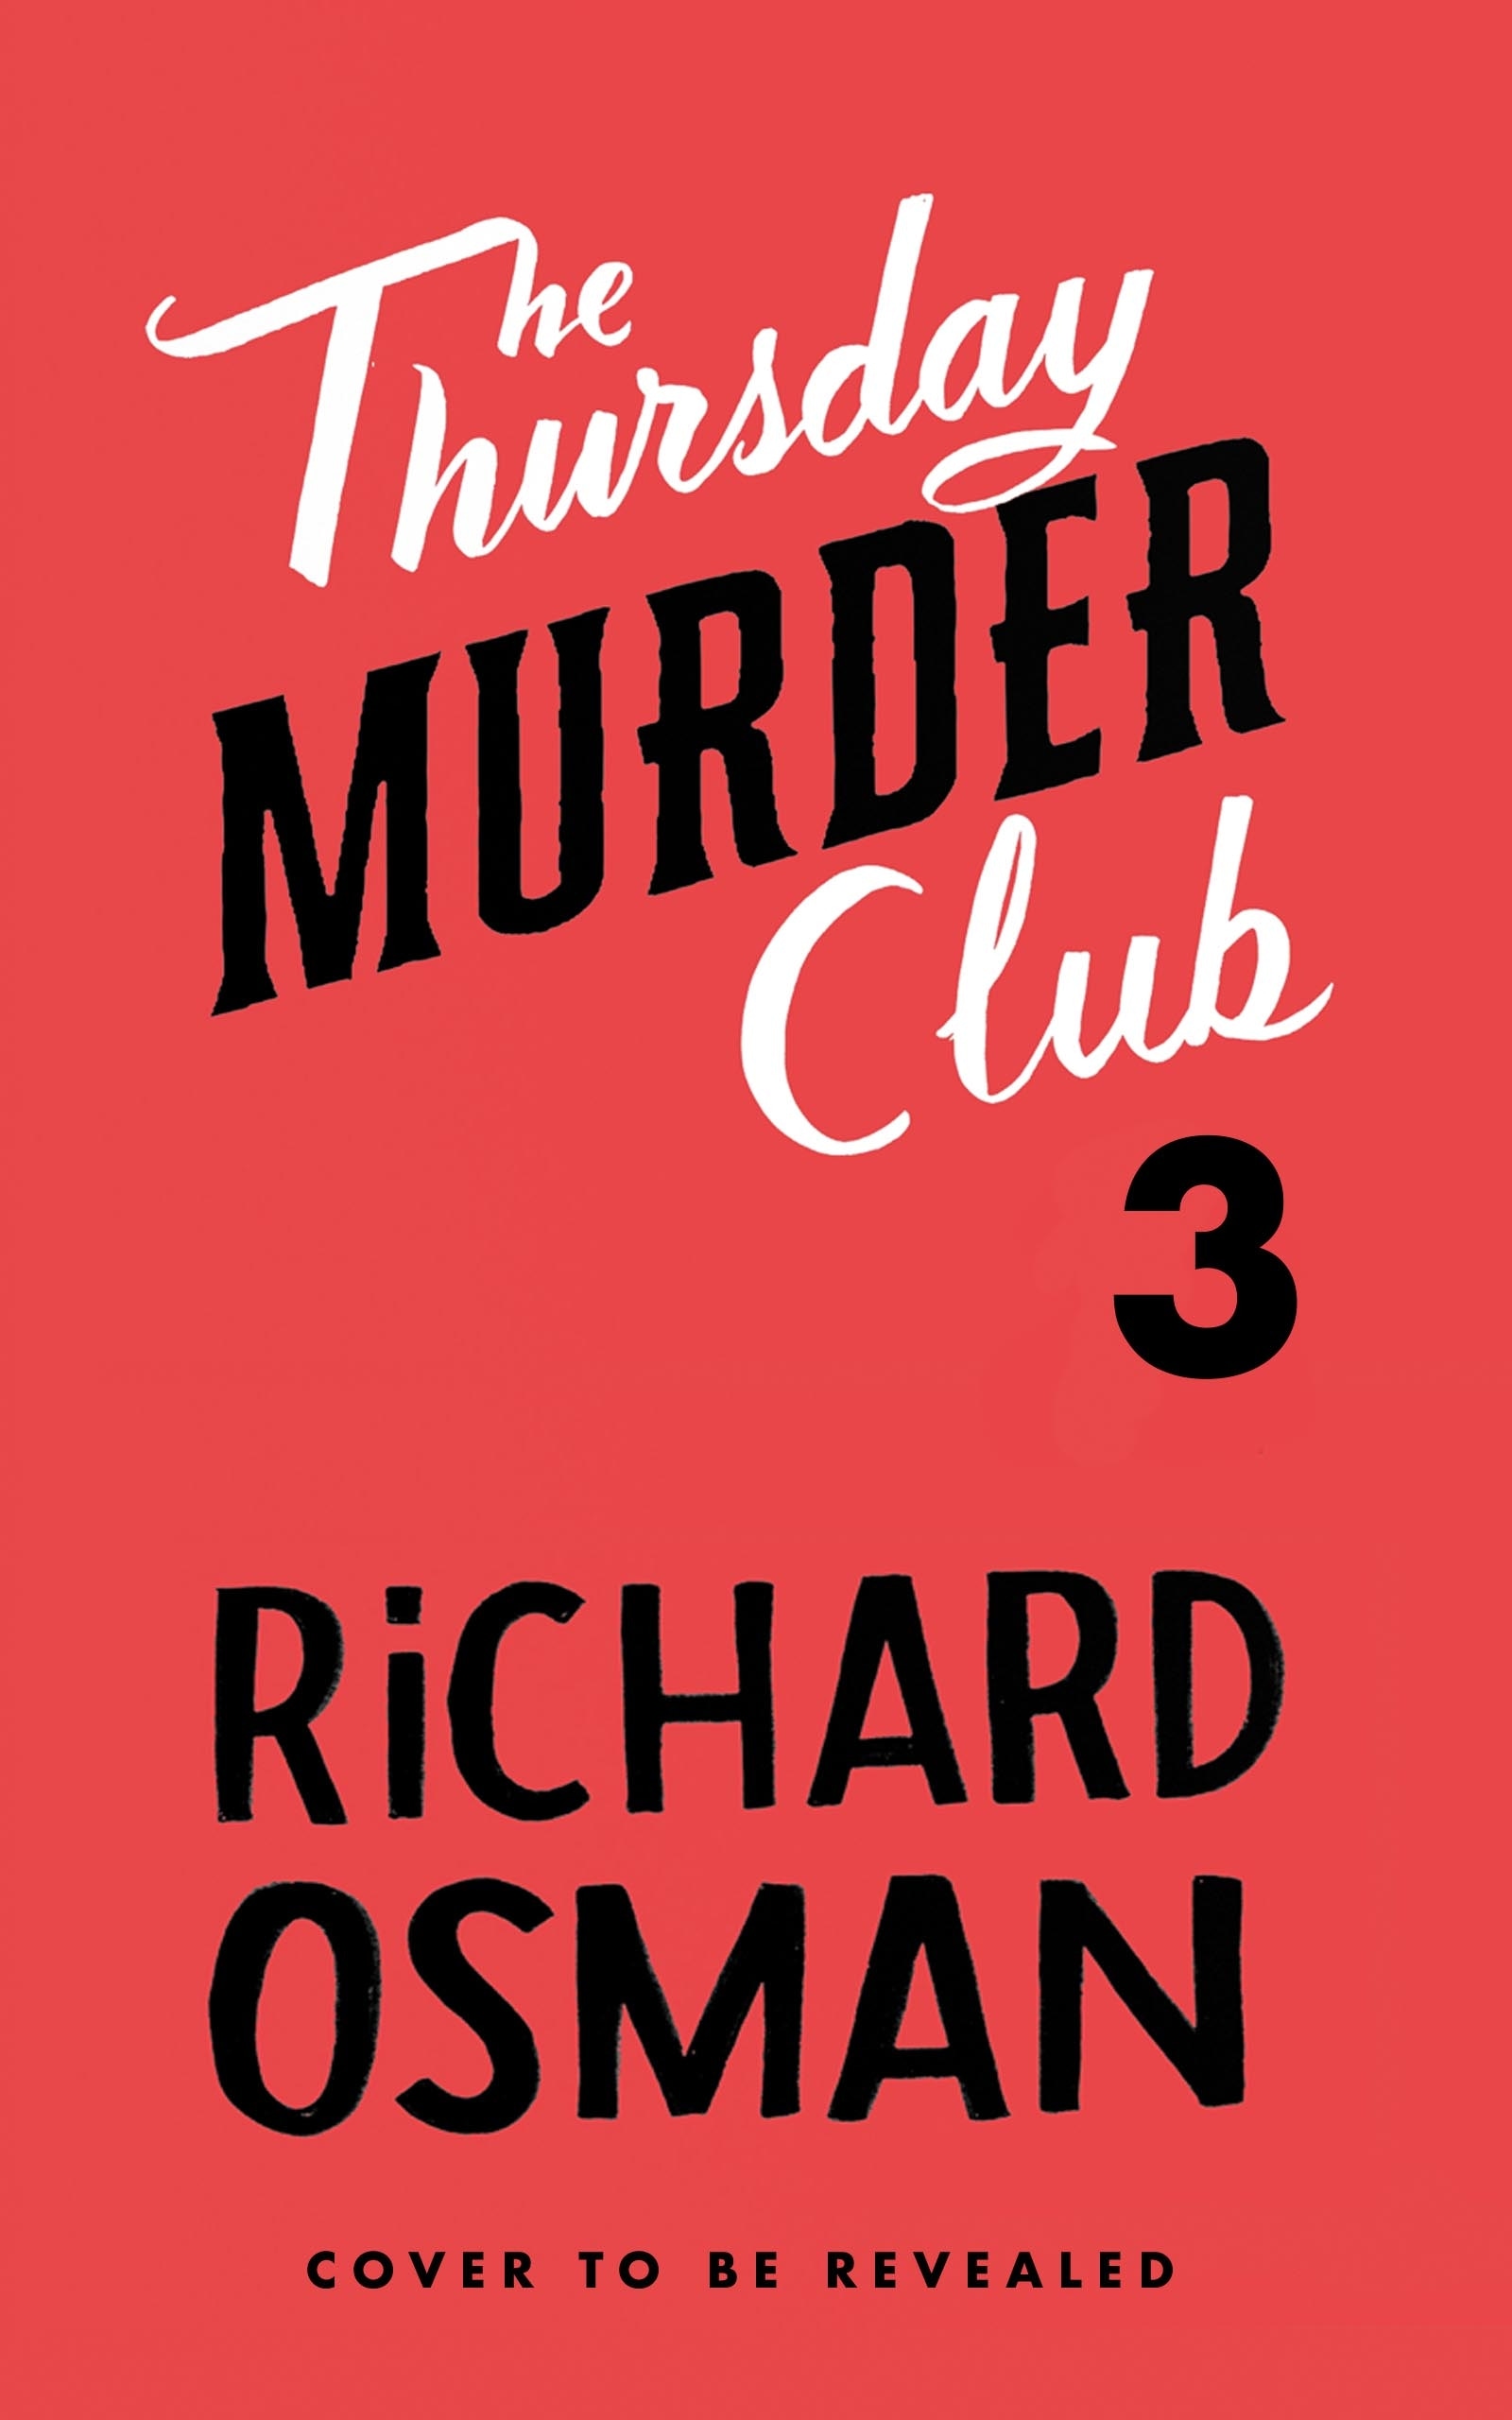 Book “Thursday Murder Club Book 3” by Richard Osman — September 15, 2022